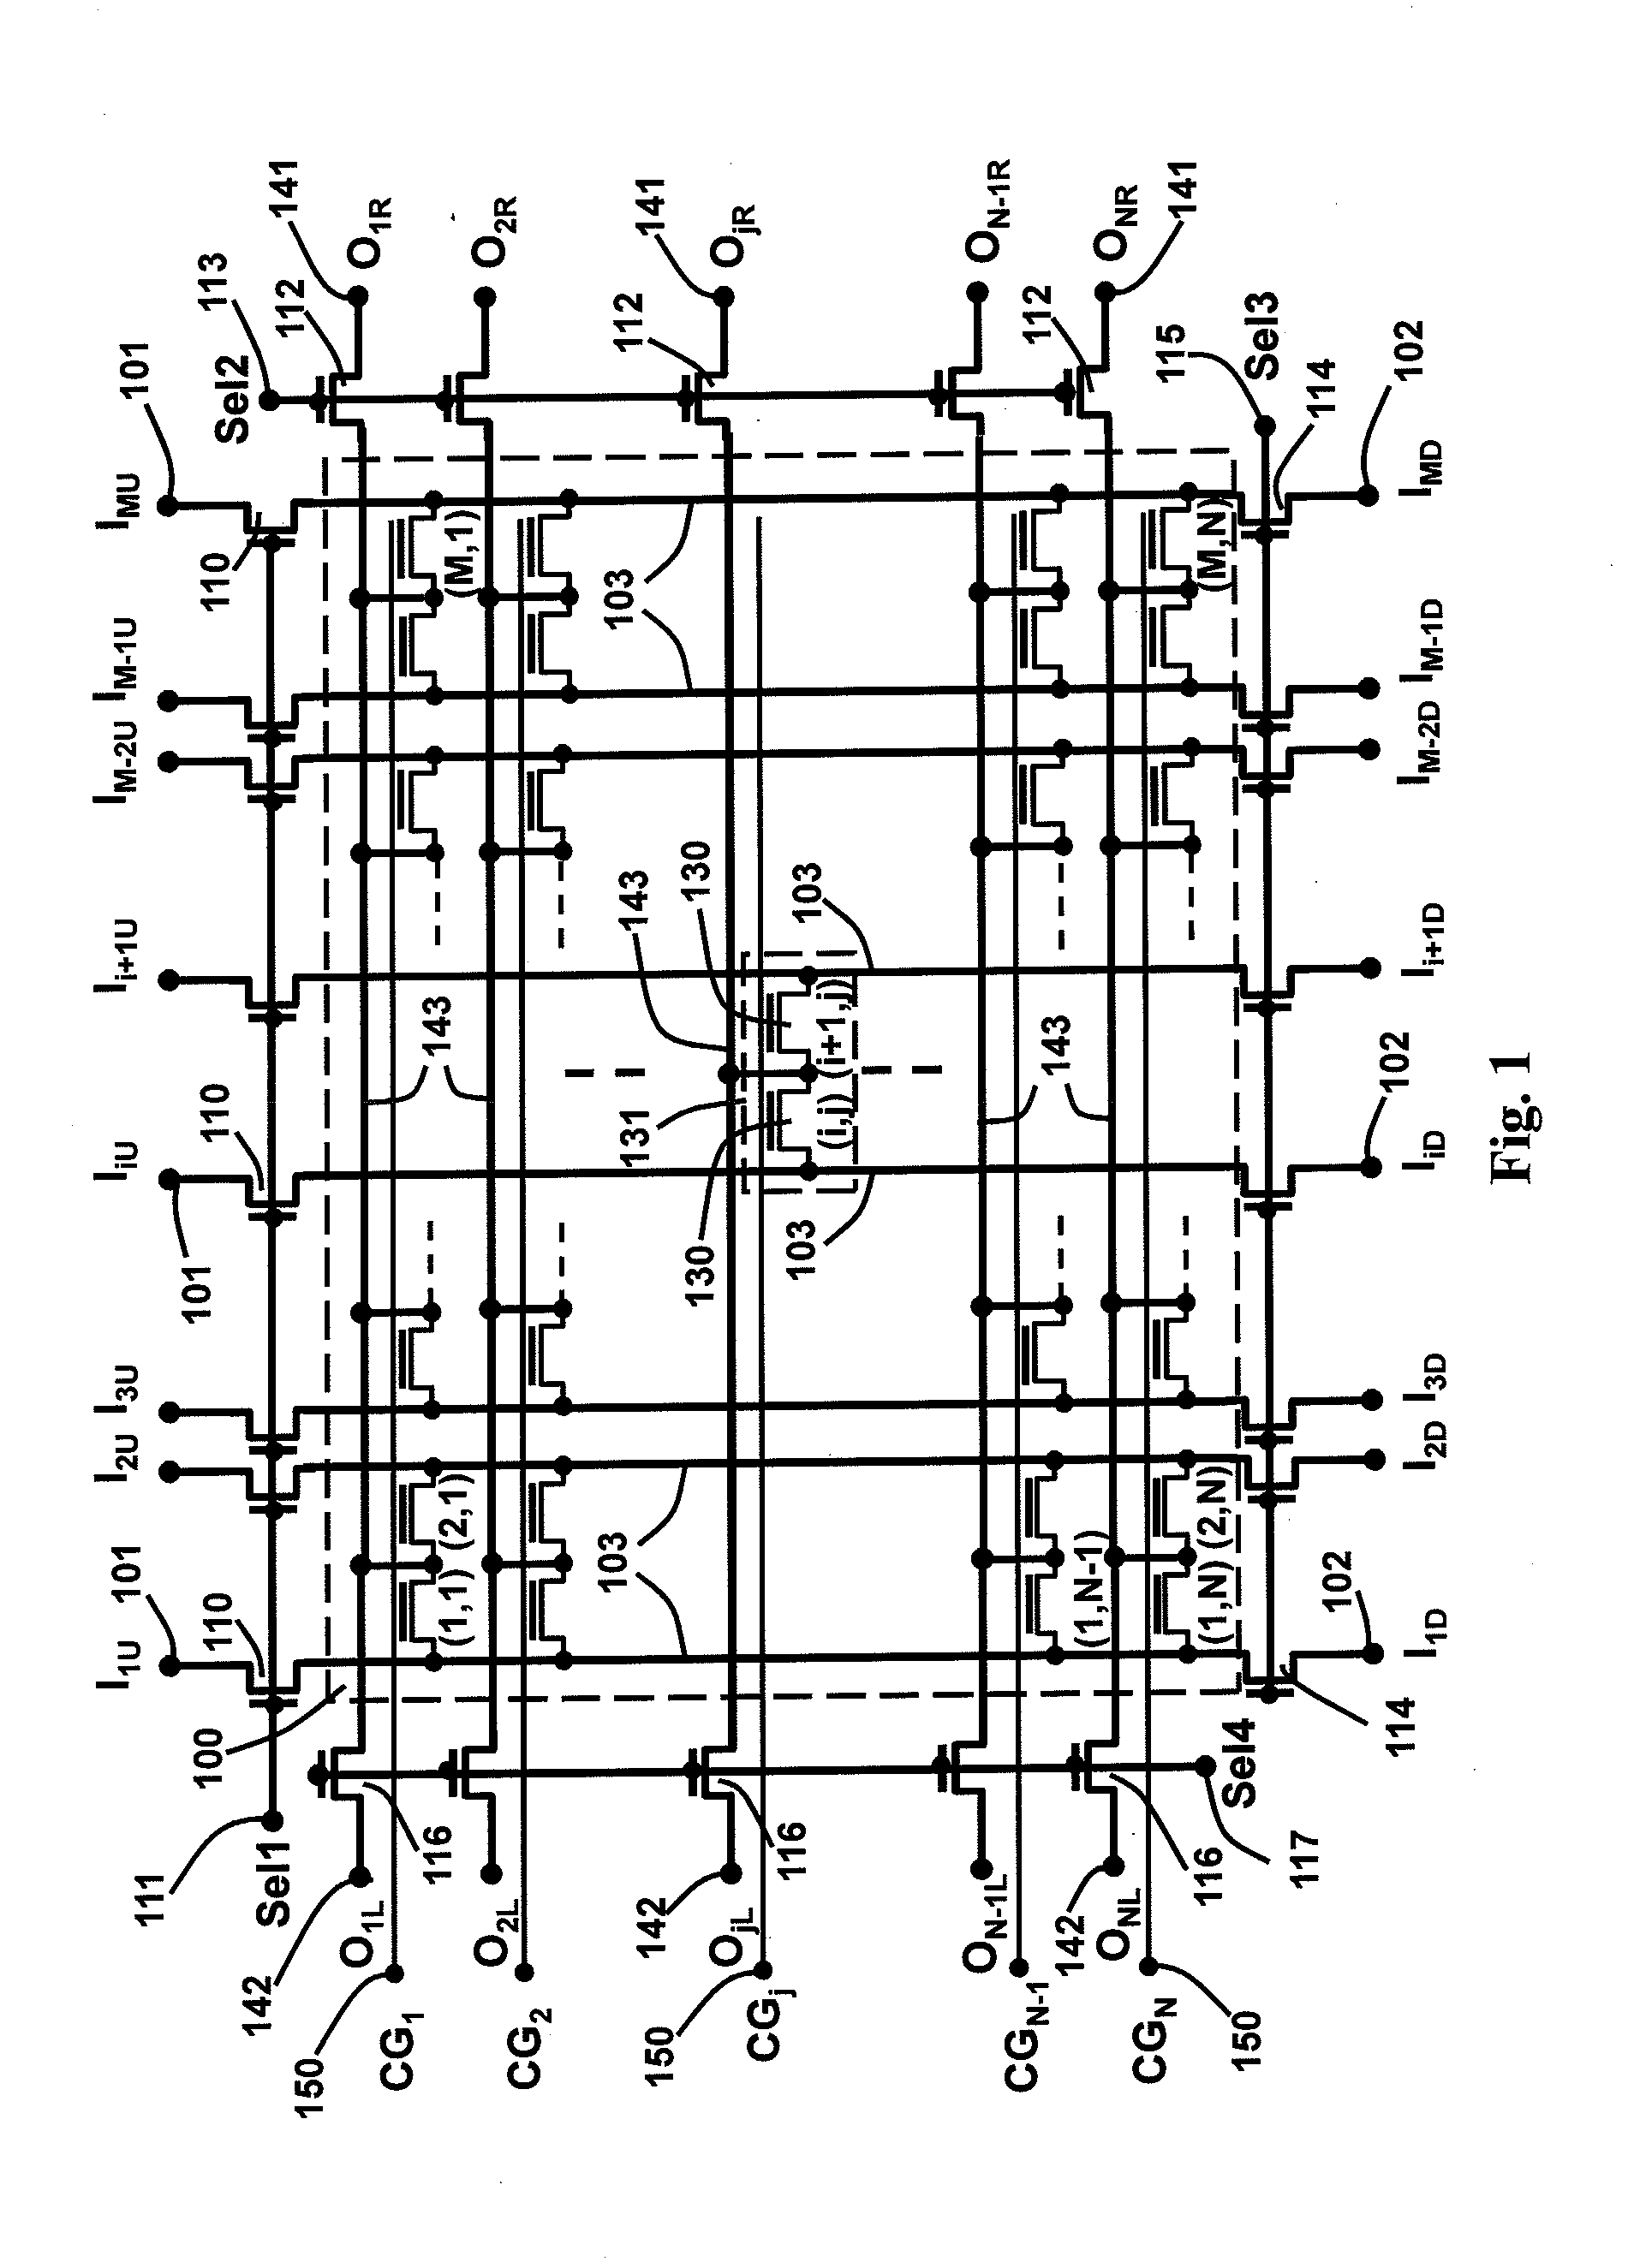 Interconnection matrix using semiconductor non-volatile memory